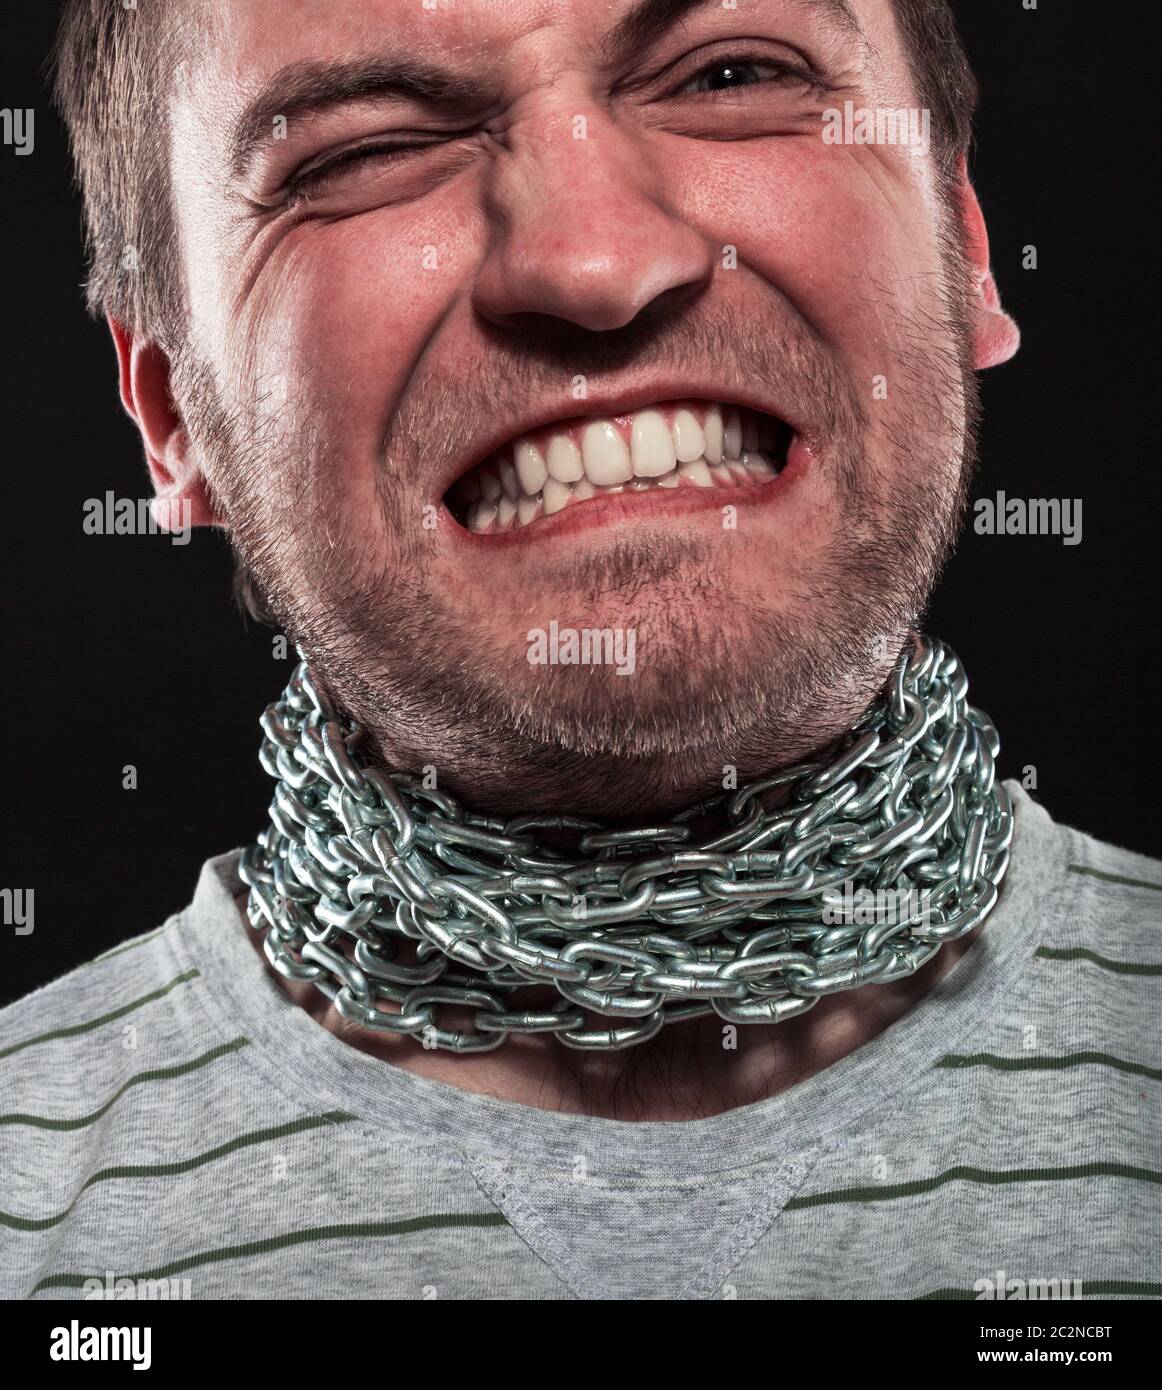 Homme qui crie avec fer à repasser la chaîne autour du cou Photo Stock -  Alamy